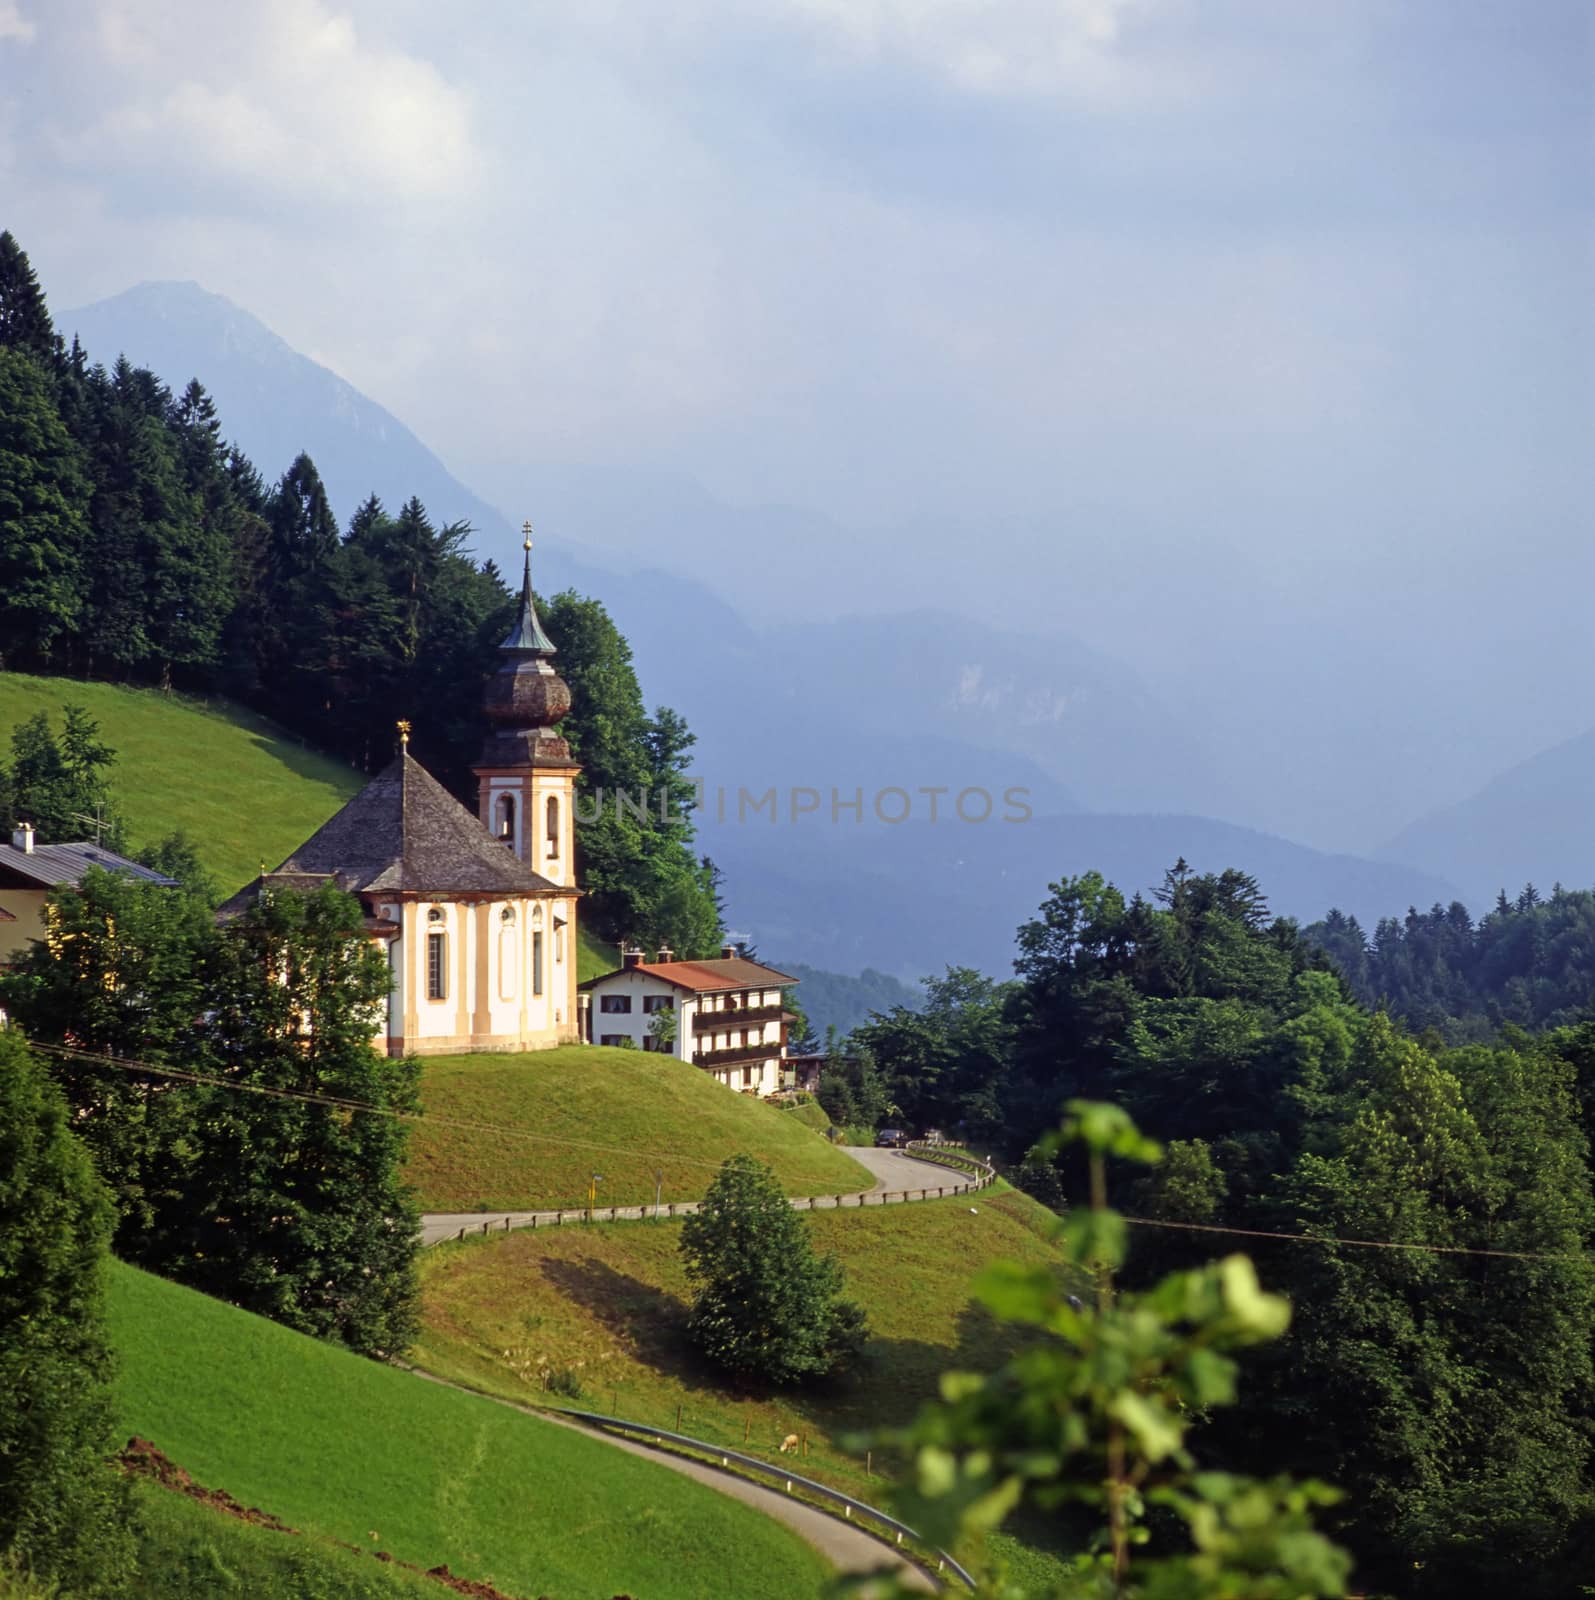  Berchtesgaden, Germany by jol66